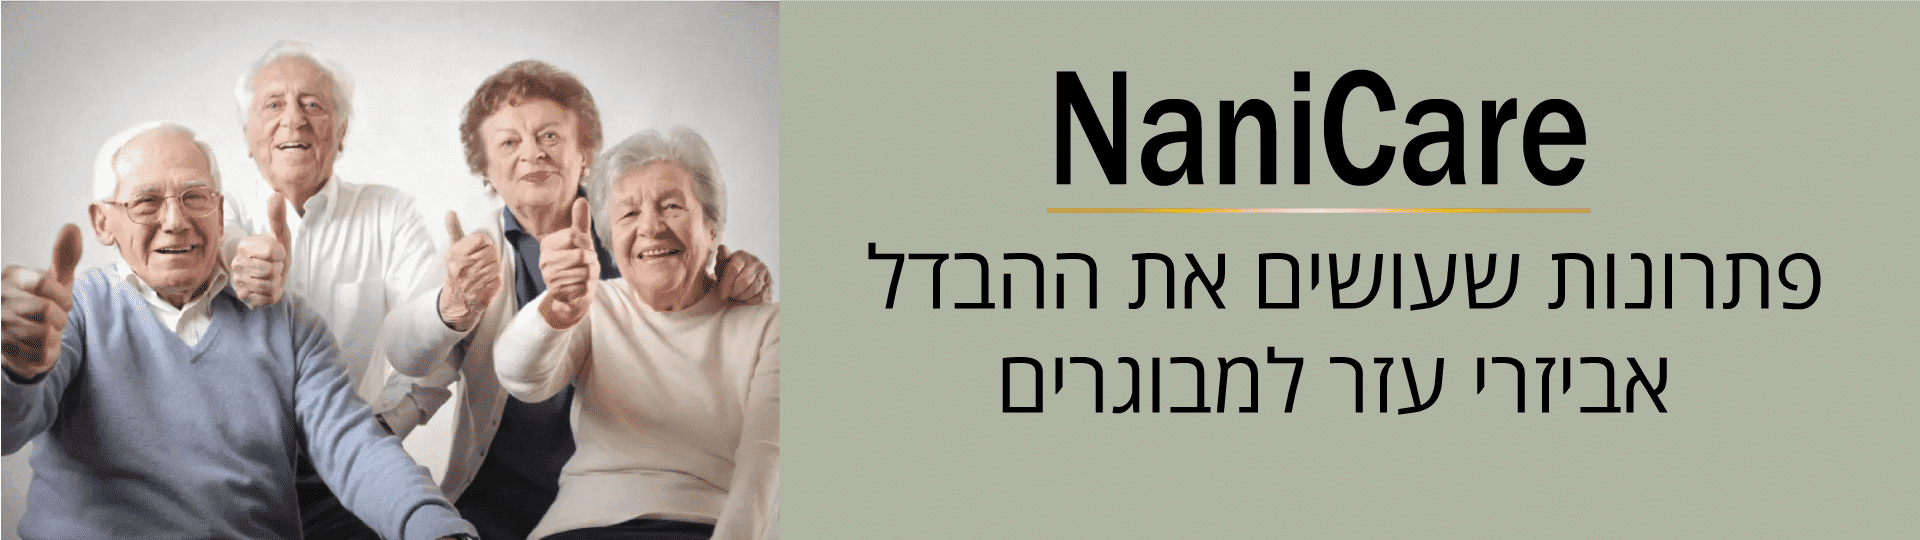 נניקאר - ציוד עזר לקשישים ובעלי מוגבלויות